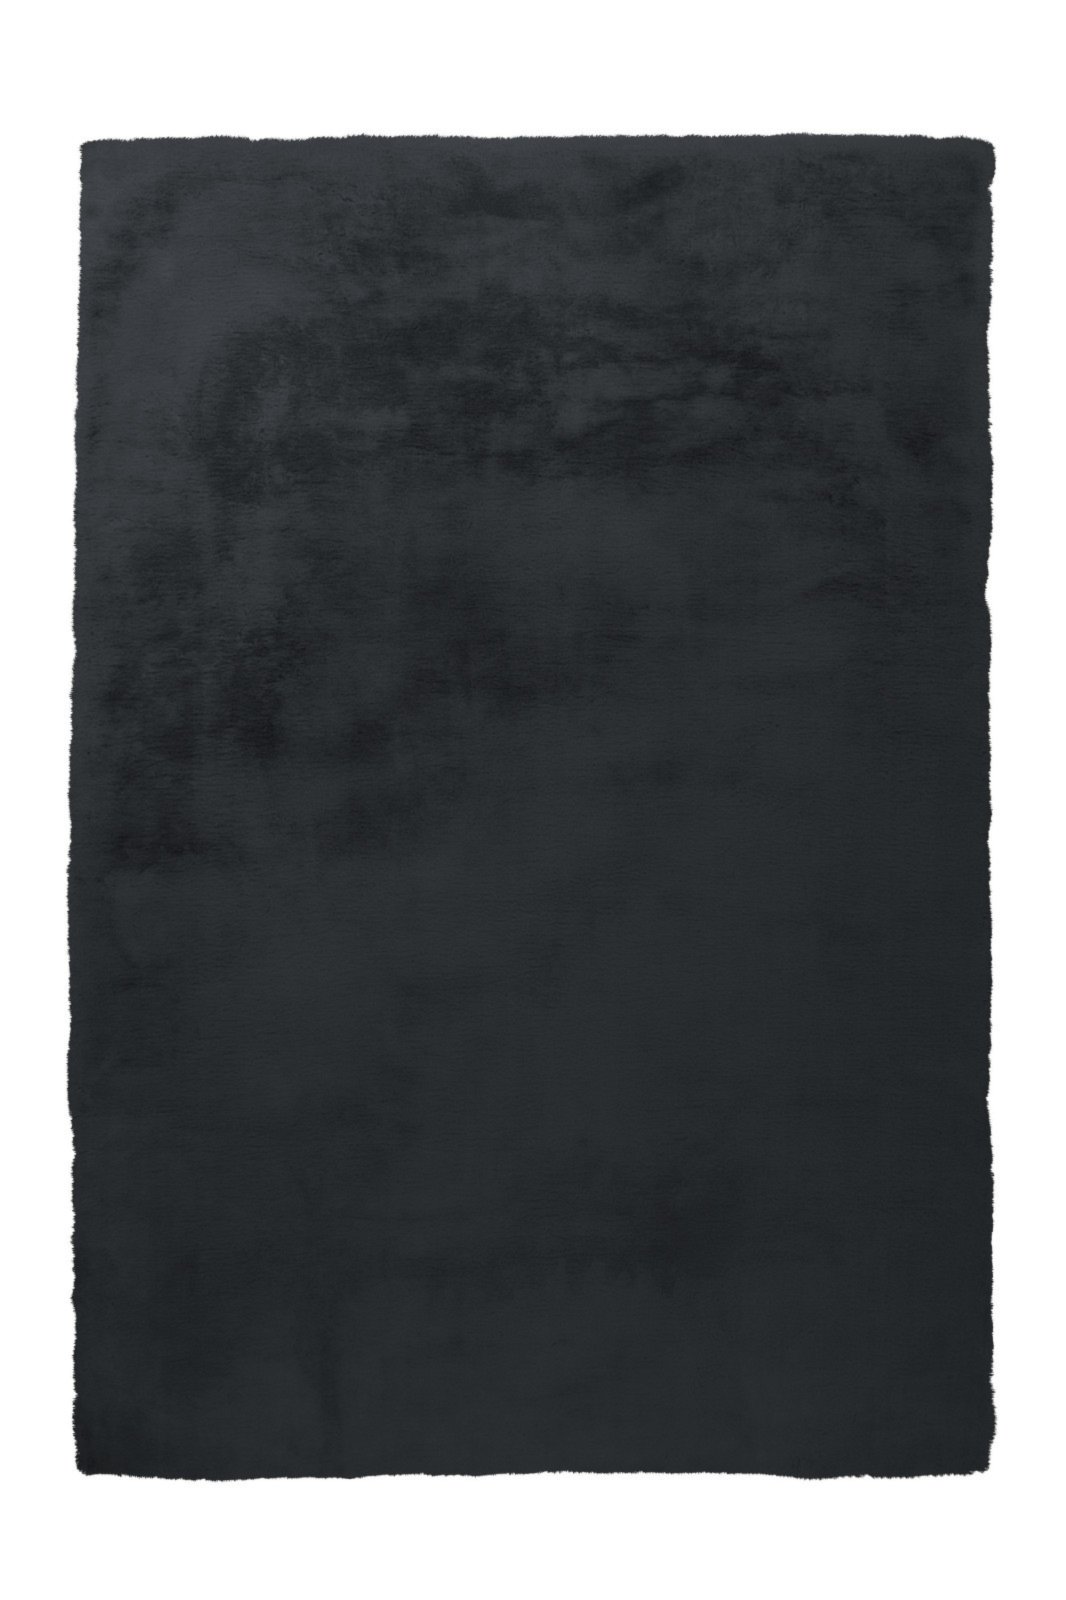 Kunstfell-Teppich - Kaninchenfell-Haptik - anthrazit - 120x170 cm | Online  bei ROLLER kaufen